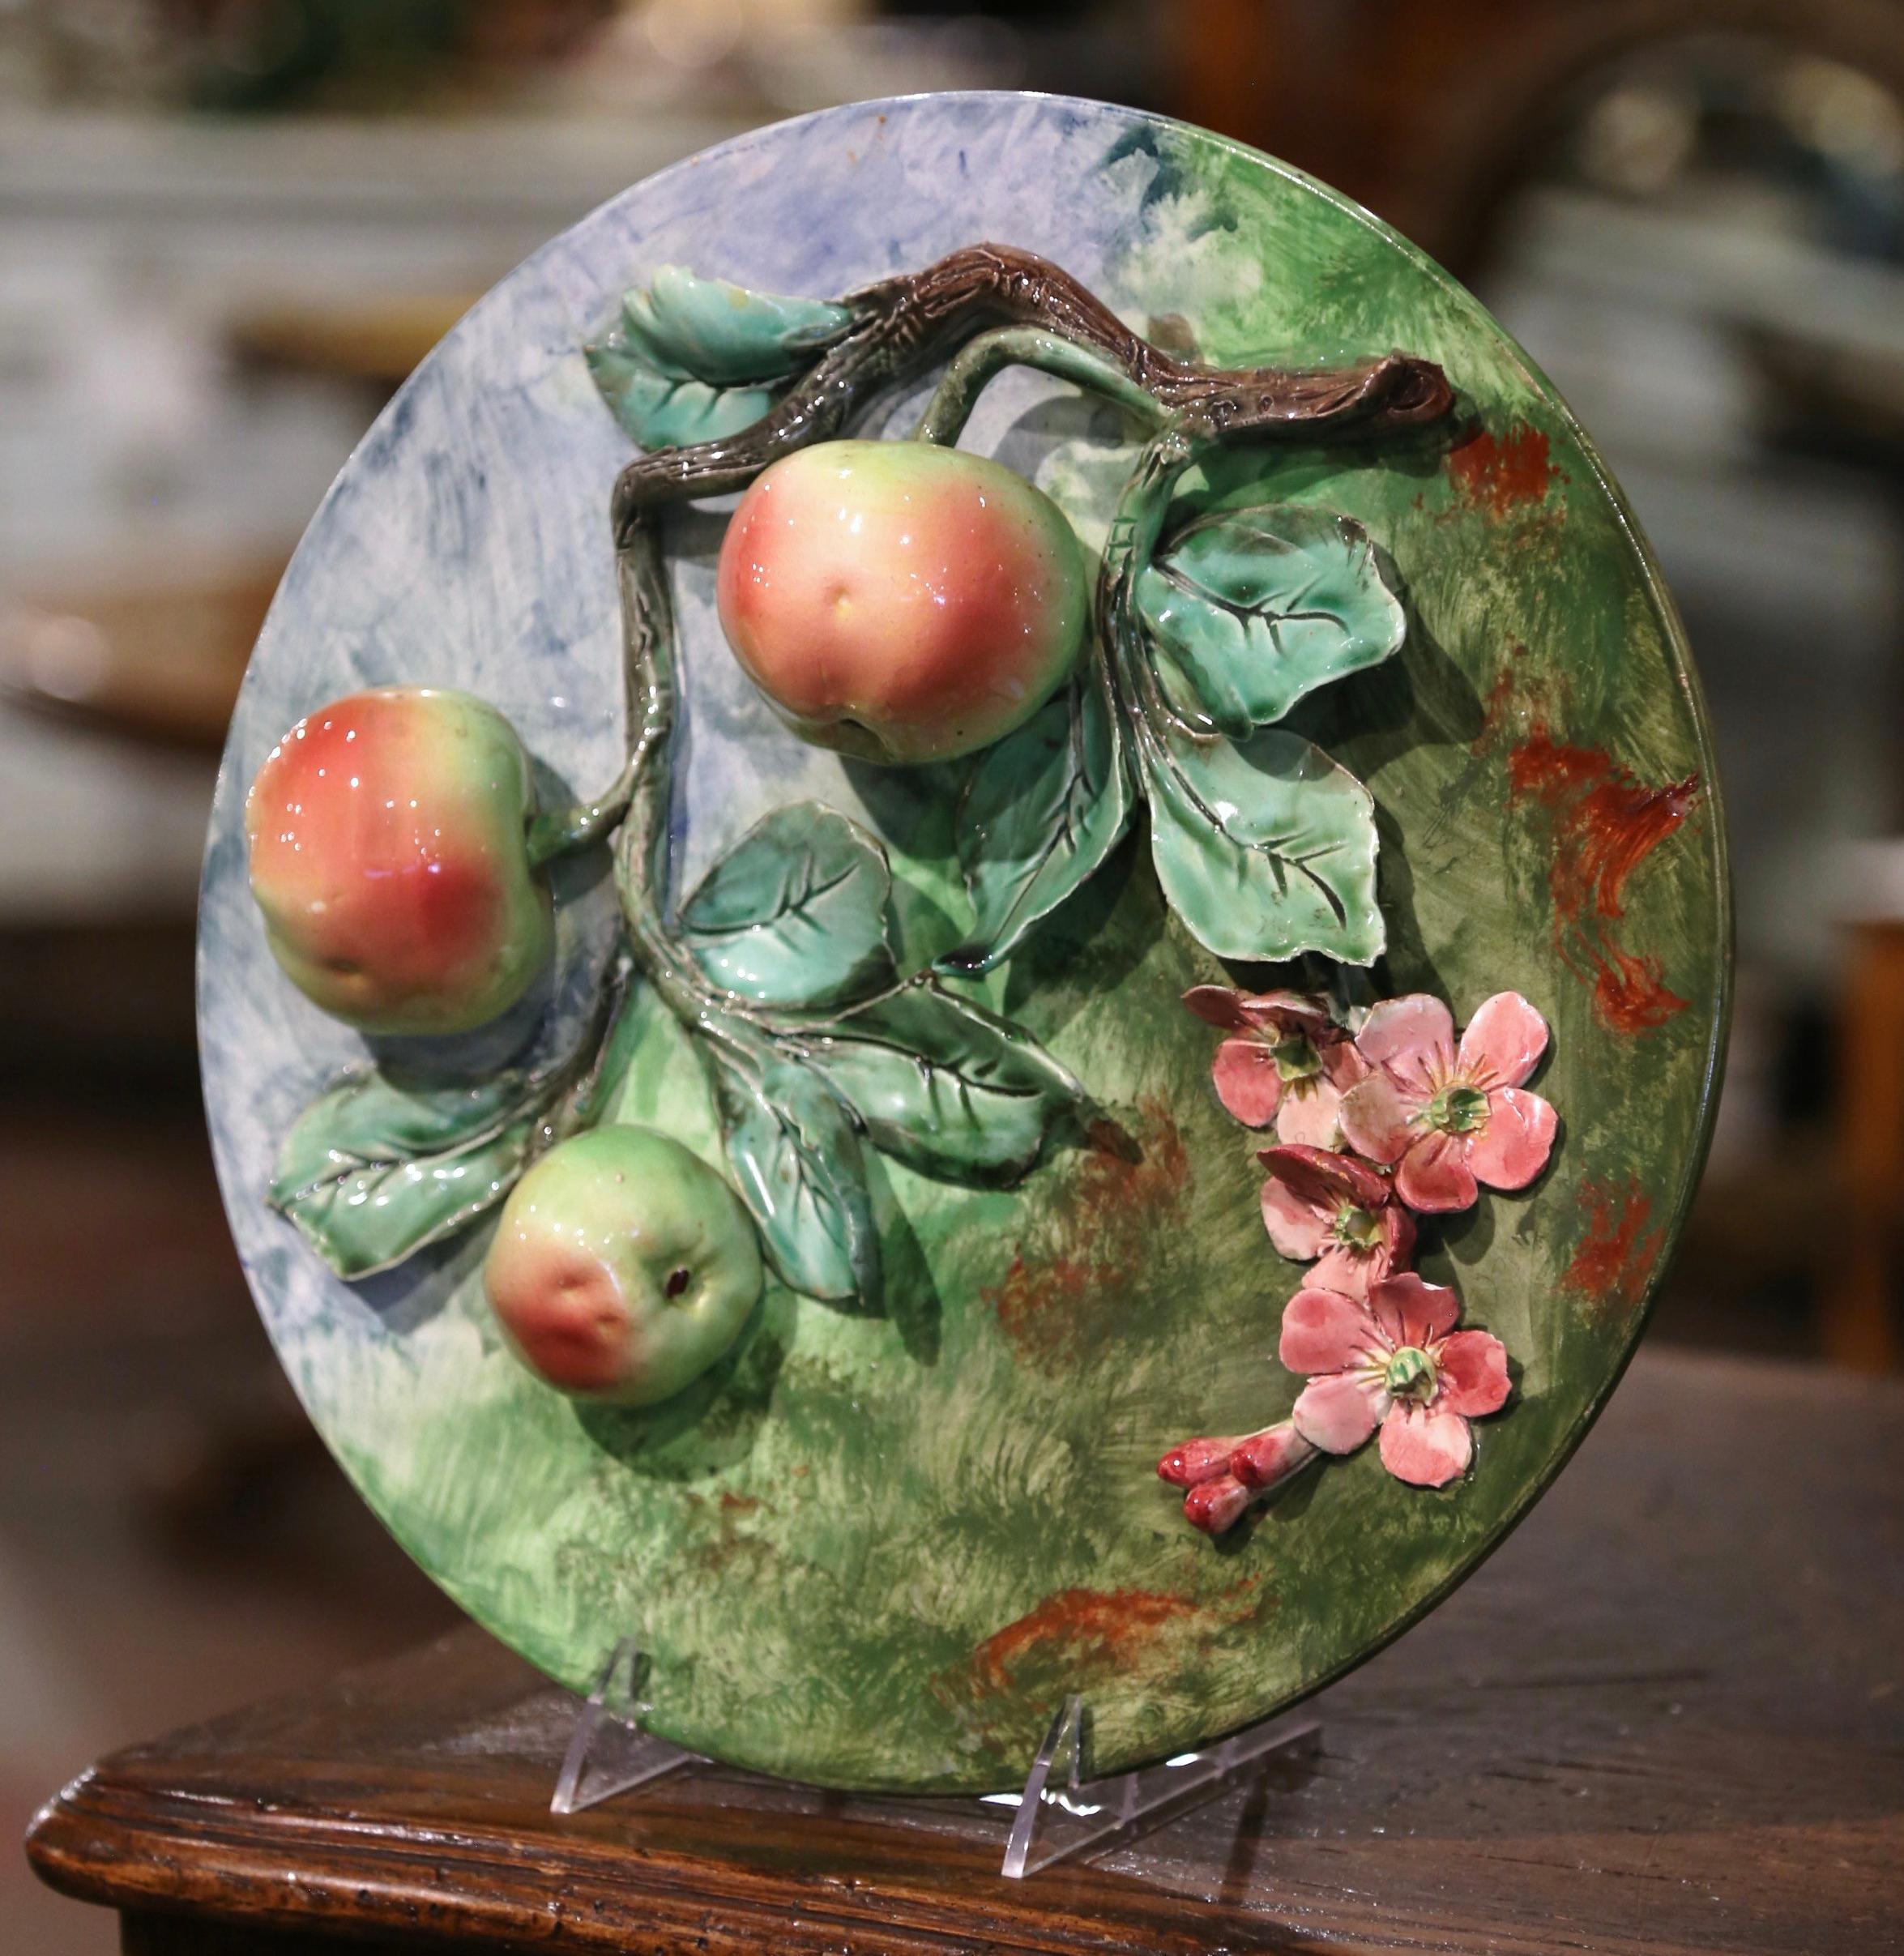 Dieser farbenfrohe, antike Majolikateller wurde um 1880 in Frankreich hergestellt. Die große, runde, handbemalte Platte zeigt rosa Blumen und drei rote und gelbe Äpfel, die an einem mit grünen Blättern bedeckten Ast hängen. Die skulpturalen